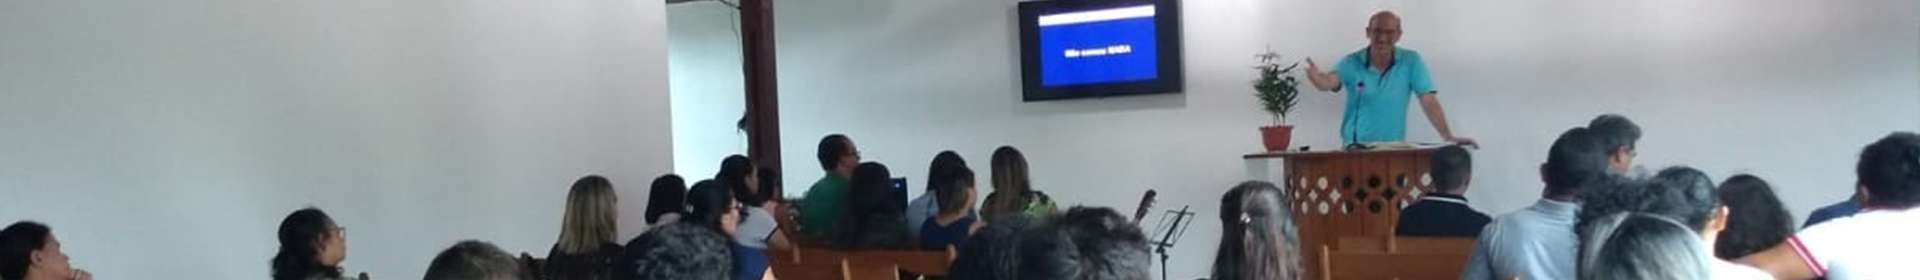 Igreja Cristã Maranata realiza seminários no interior do Amazonas